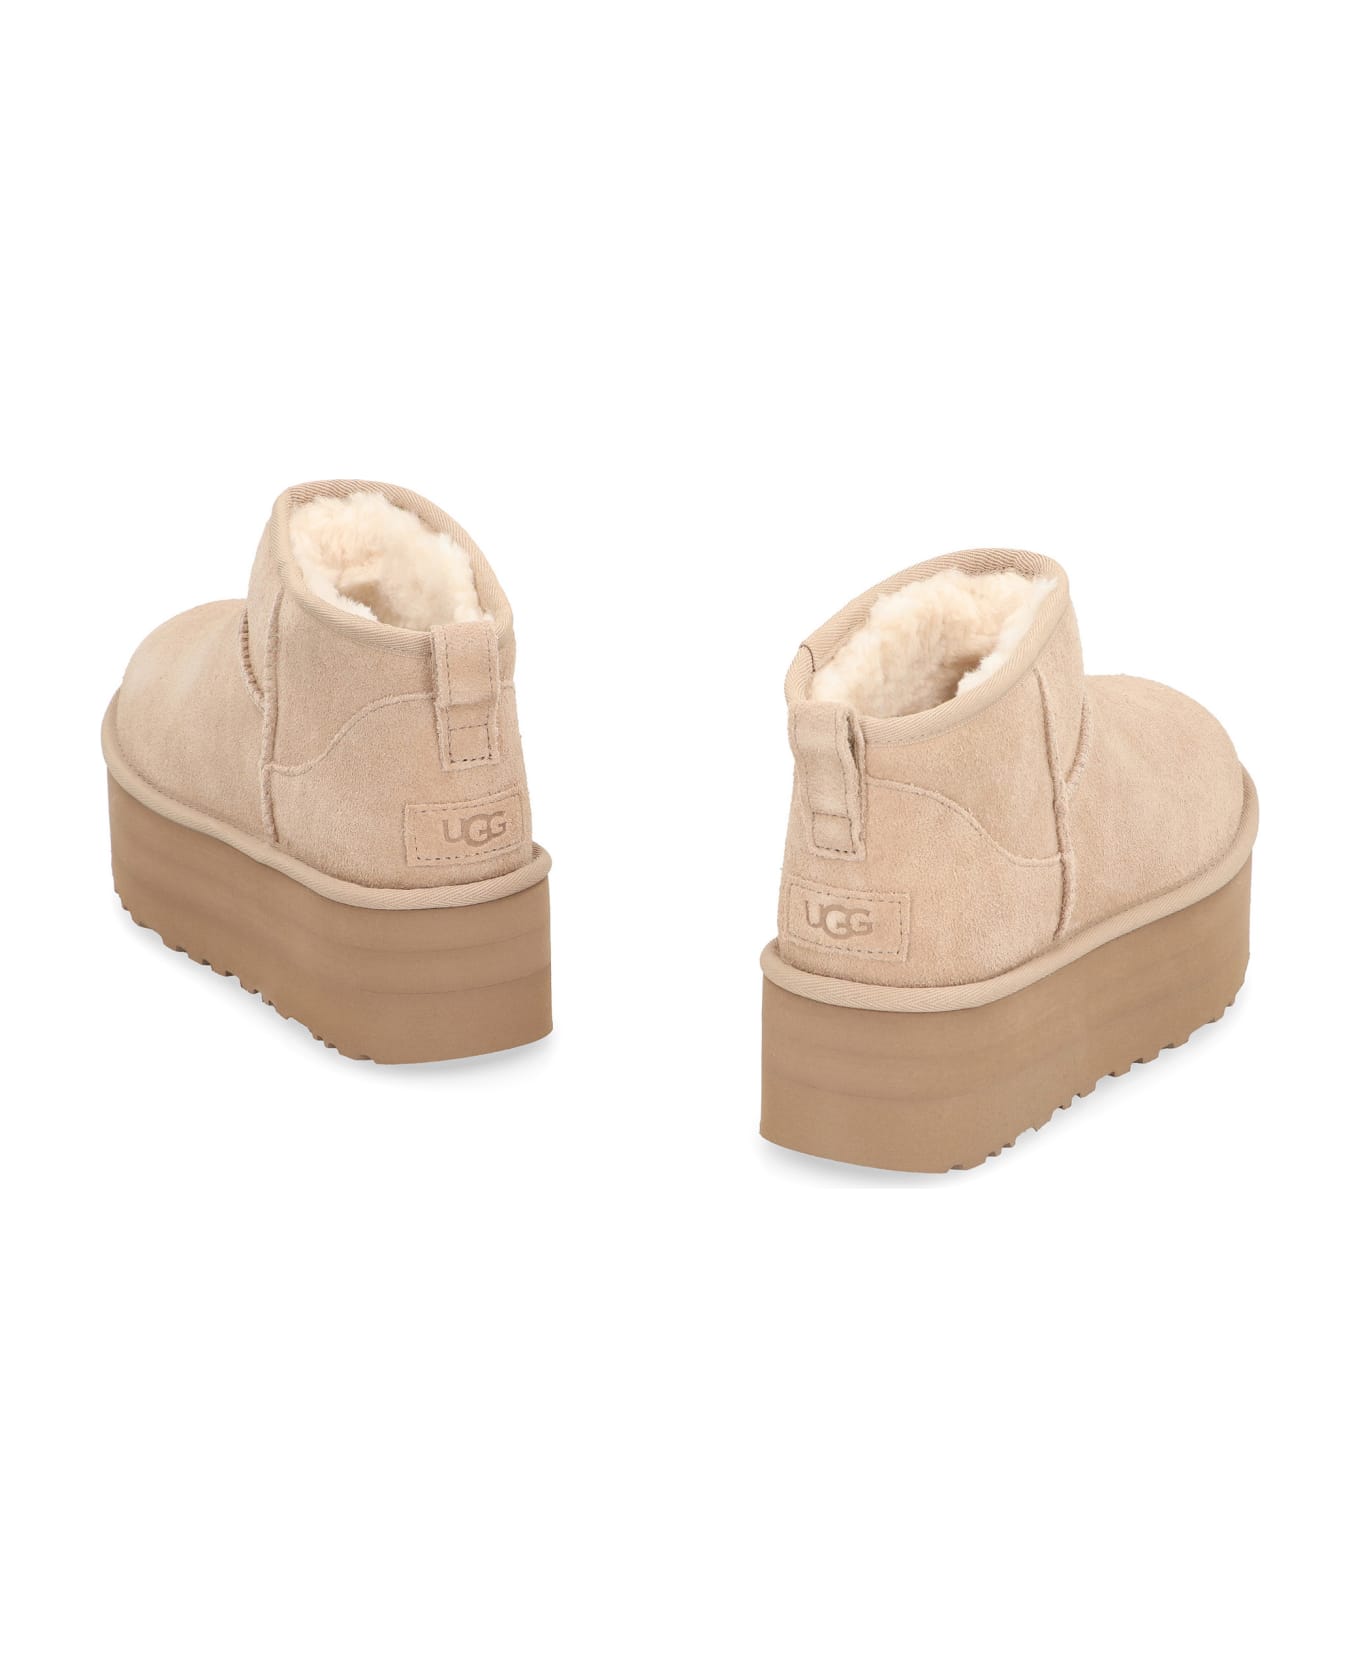 UGG Classic Ultra Mini Boots - Sand